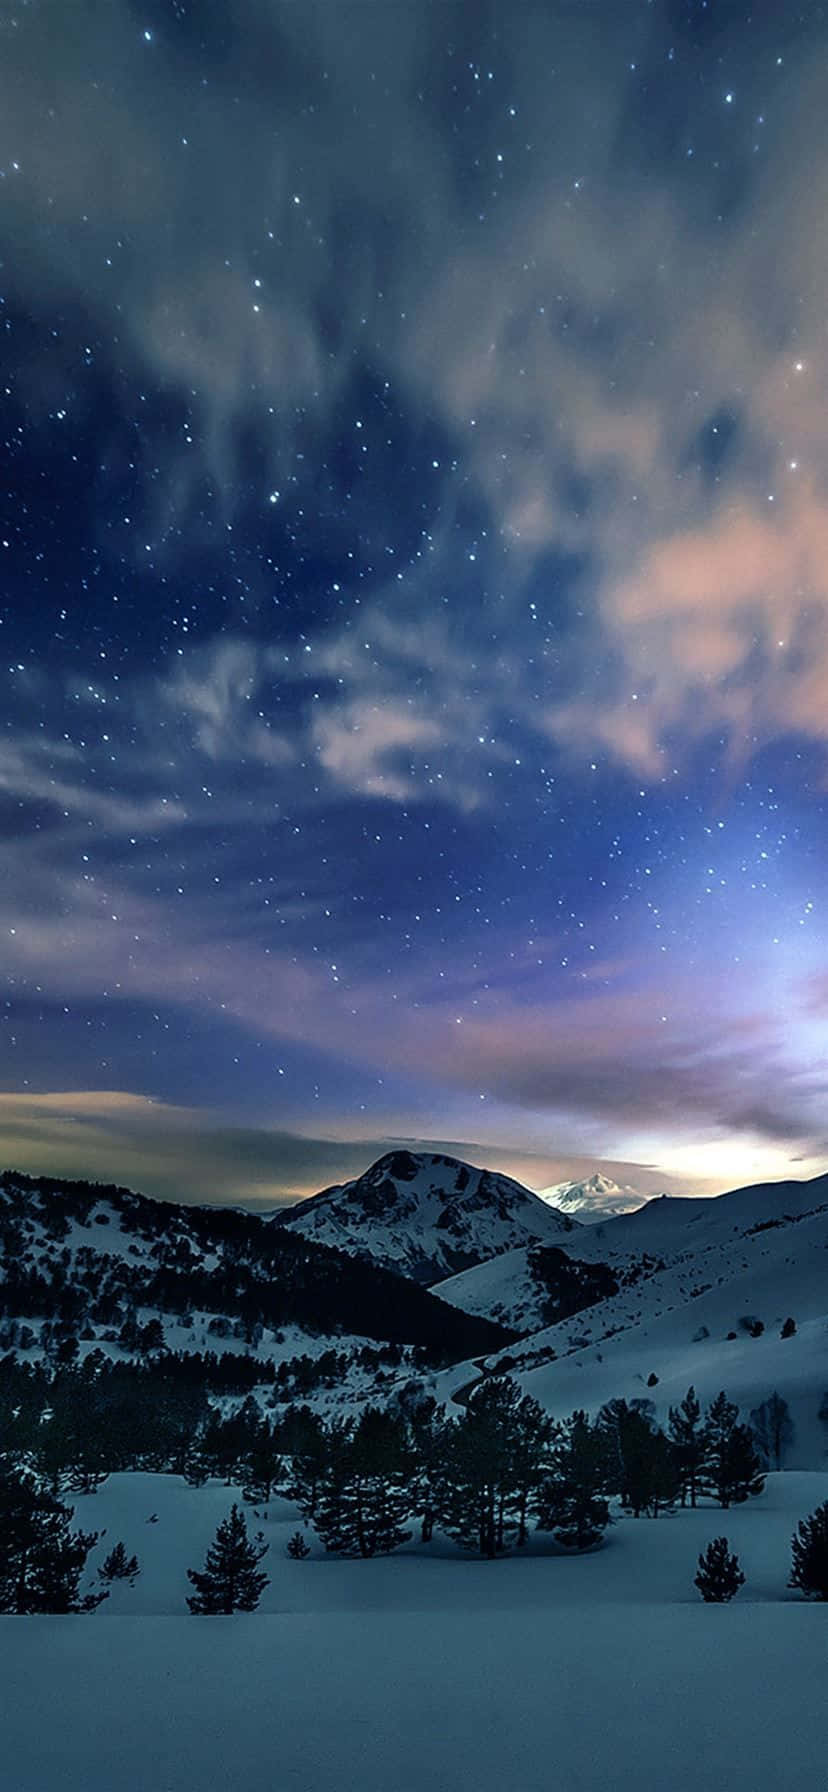 Stjernehimmel i naturen vinter iPhone Wallpaper Wallpaper